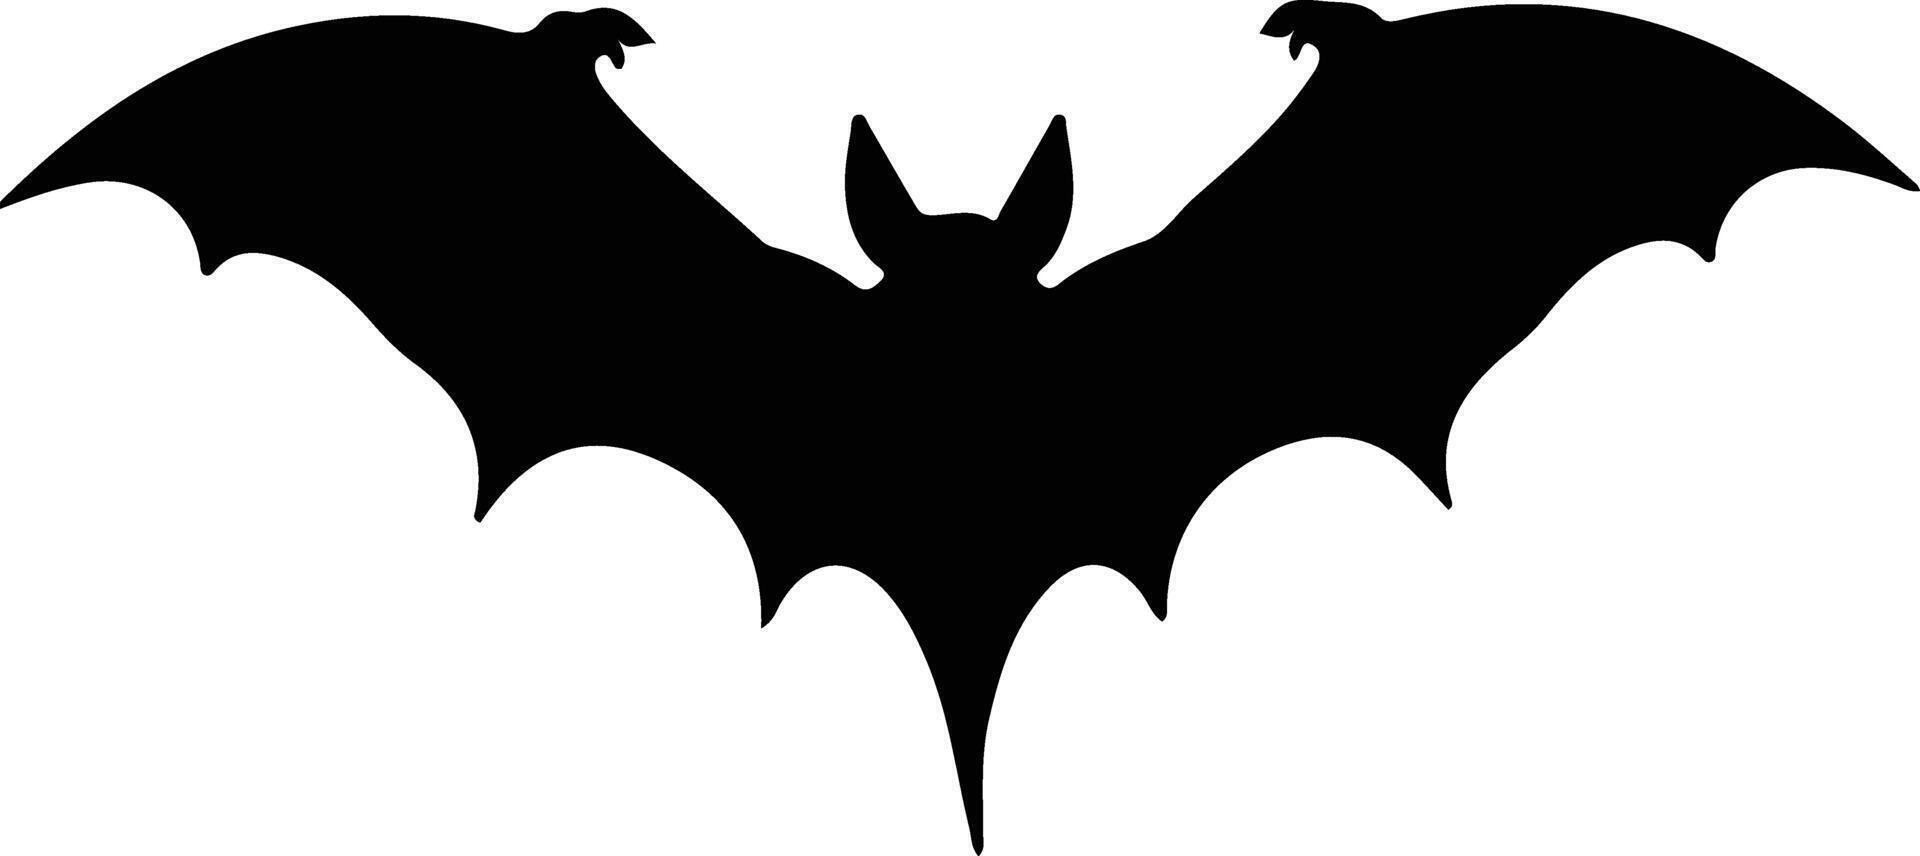 pipistrello nero silhouette vettore